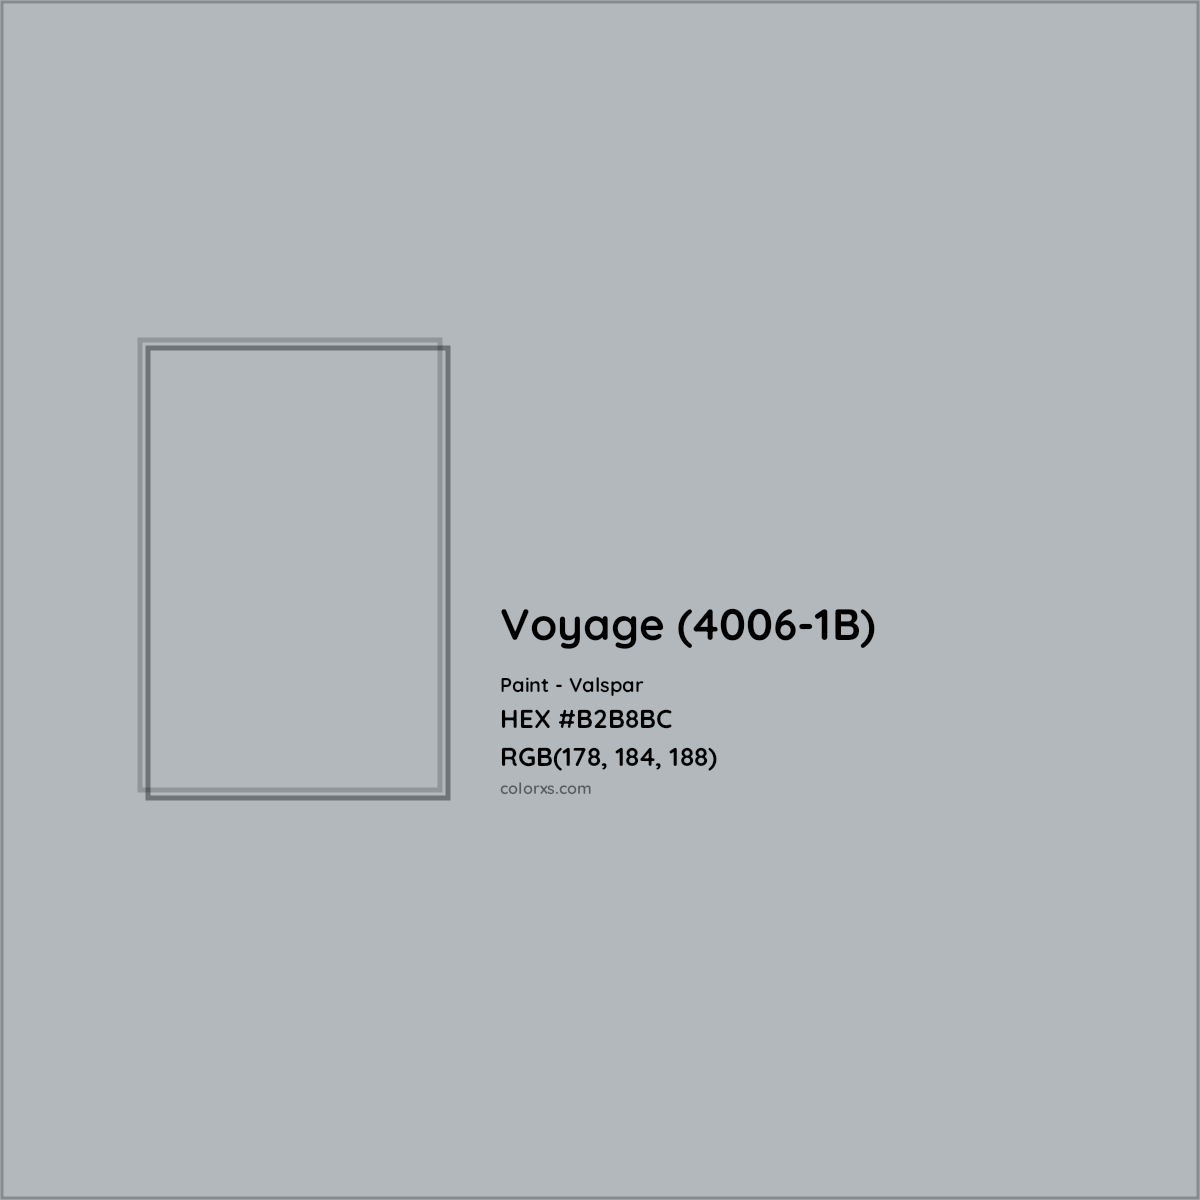 HEX #B2B8BC Voyage (4006-1B) Paint Valspar - Color Code